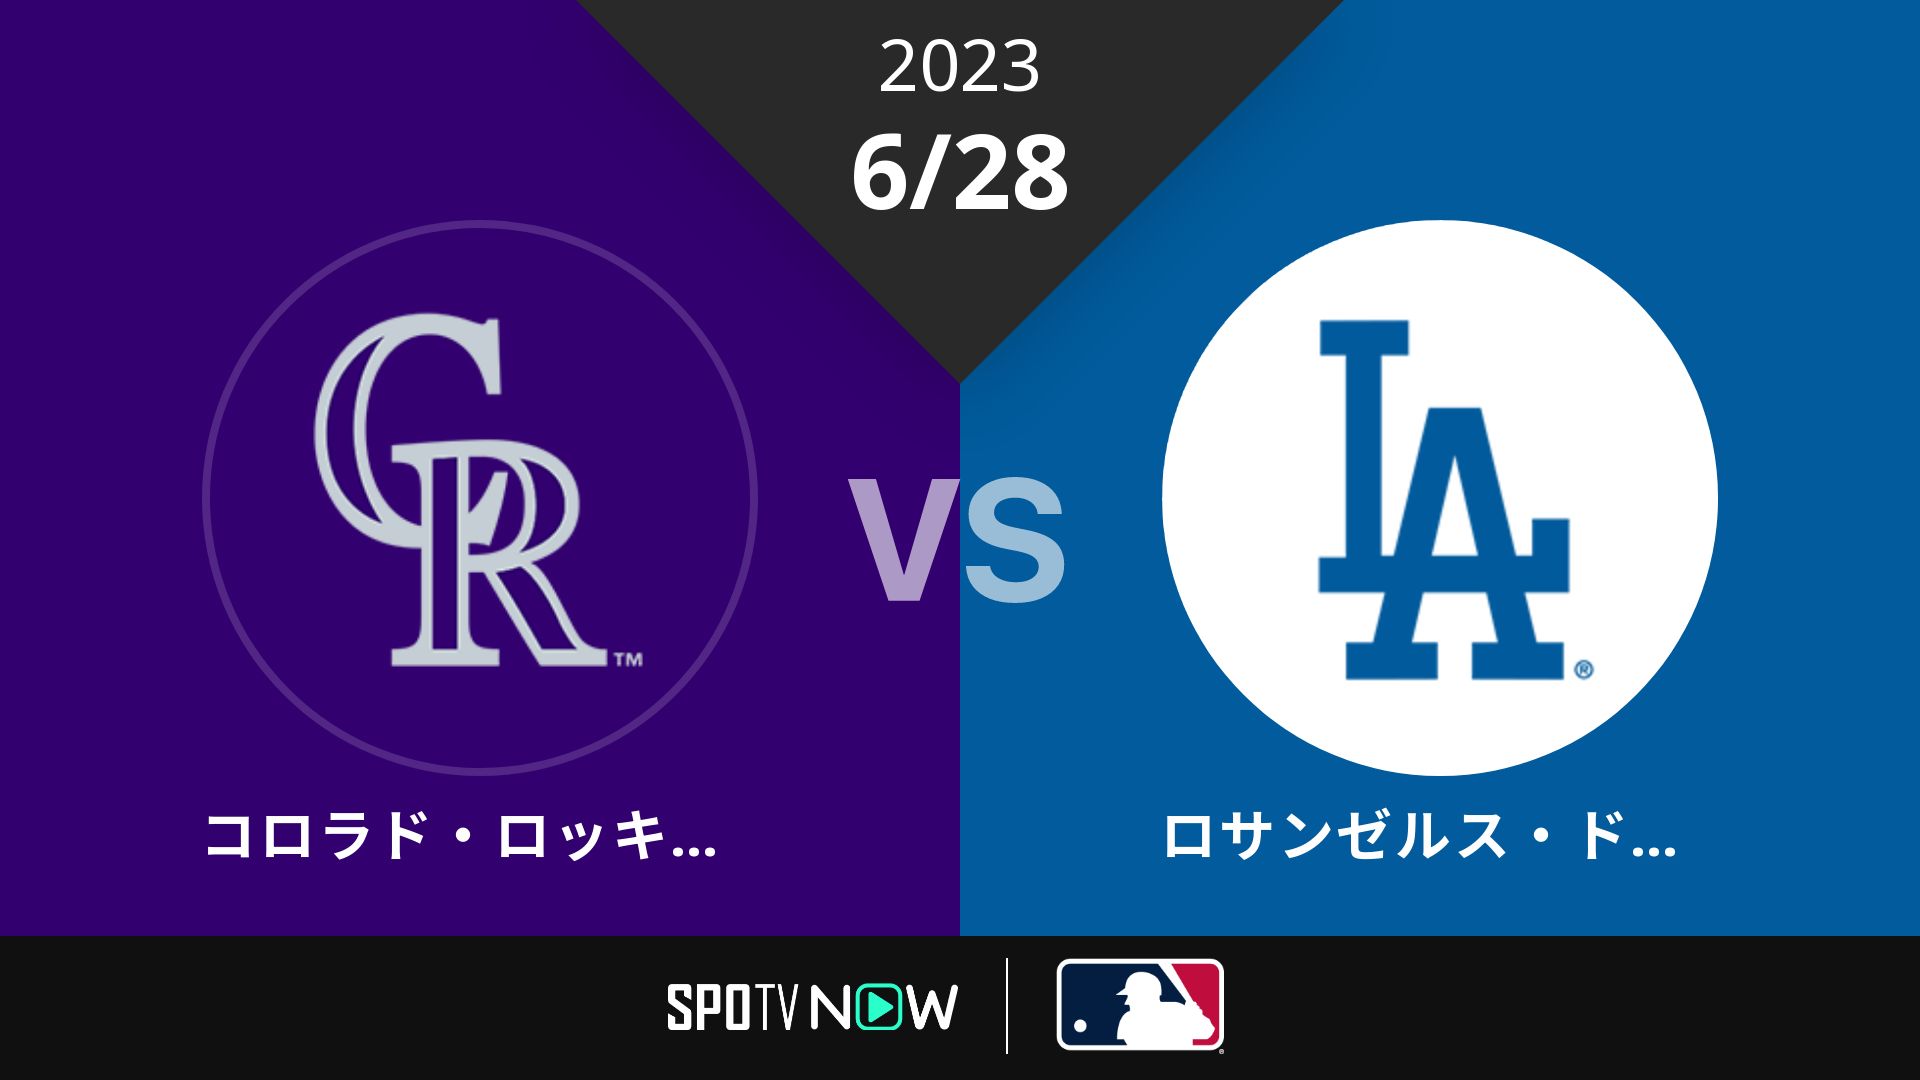 2023/6/28 ロッキーズ vs ドジャース [MLB]